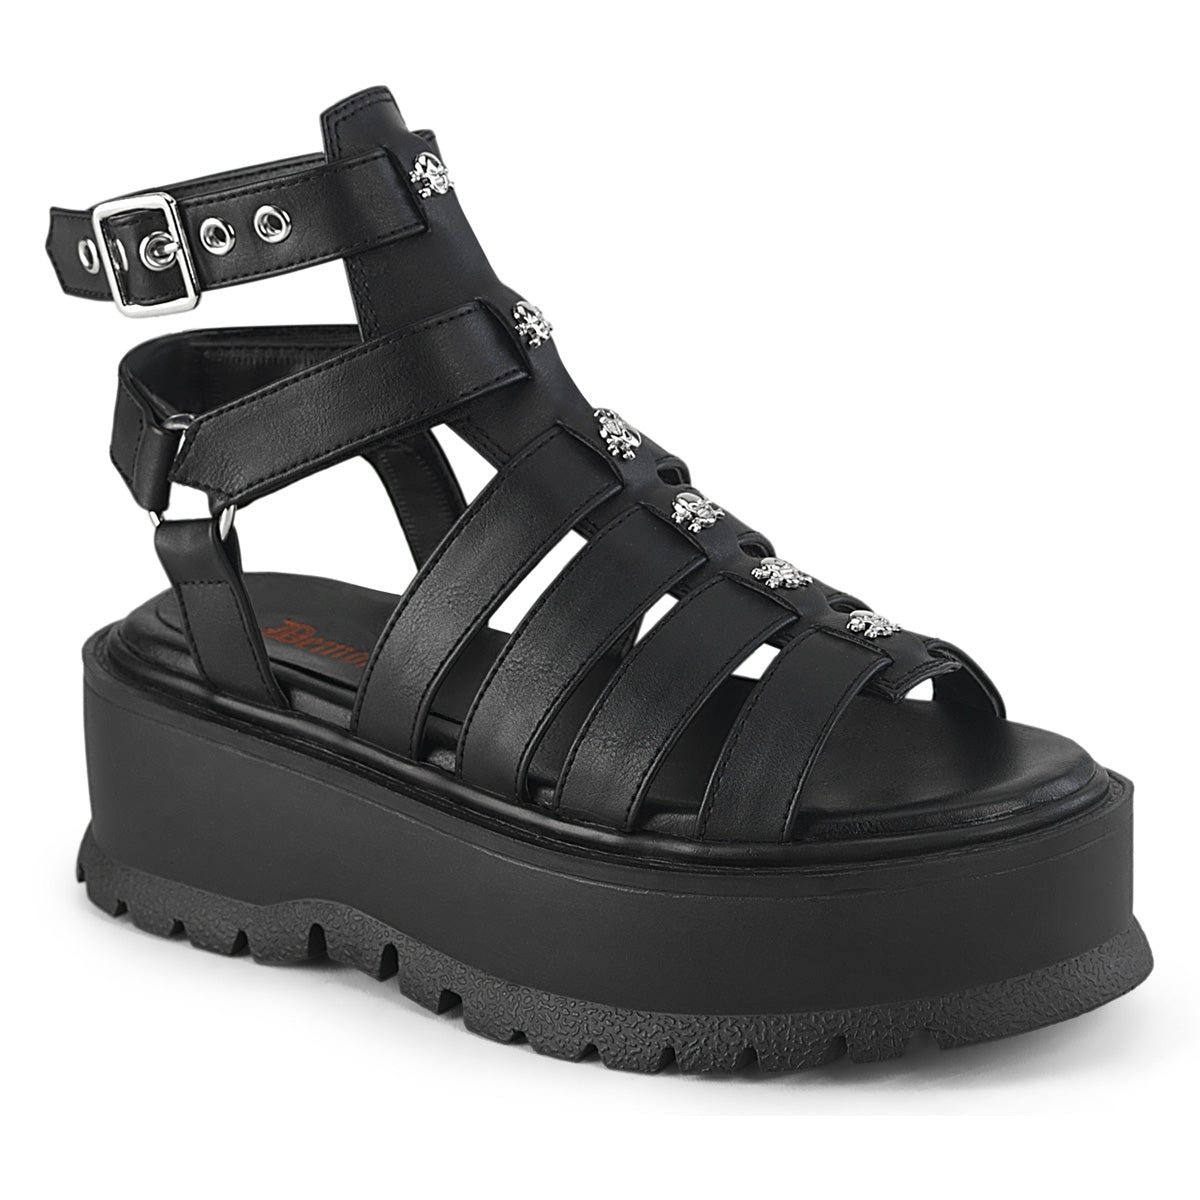 SLACKER-18 Skull & Crossbones Platform Sandals by Demonia